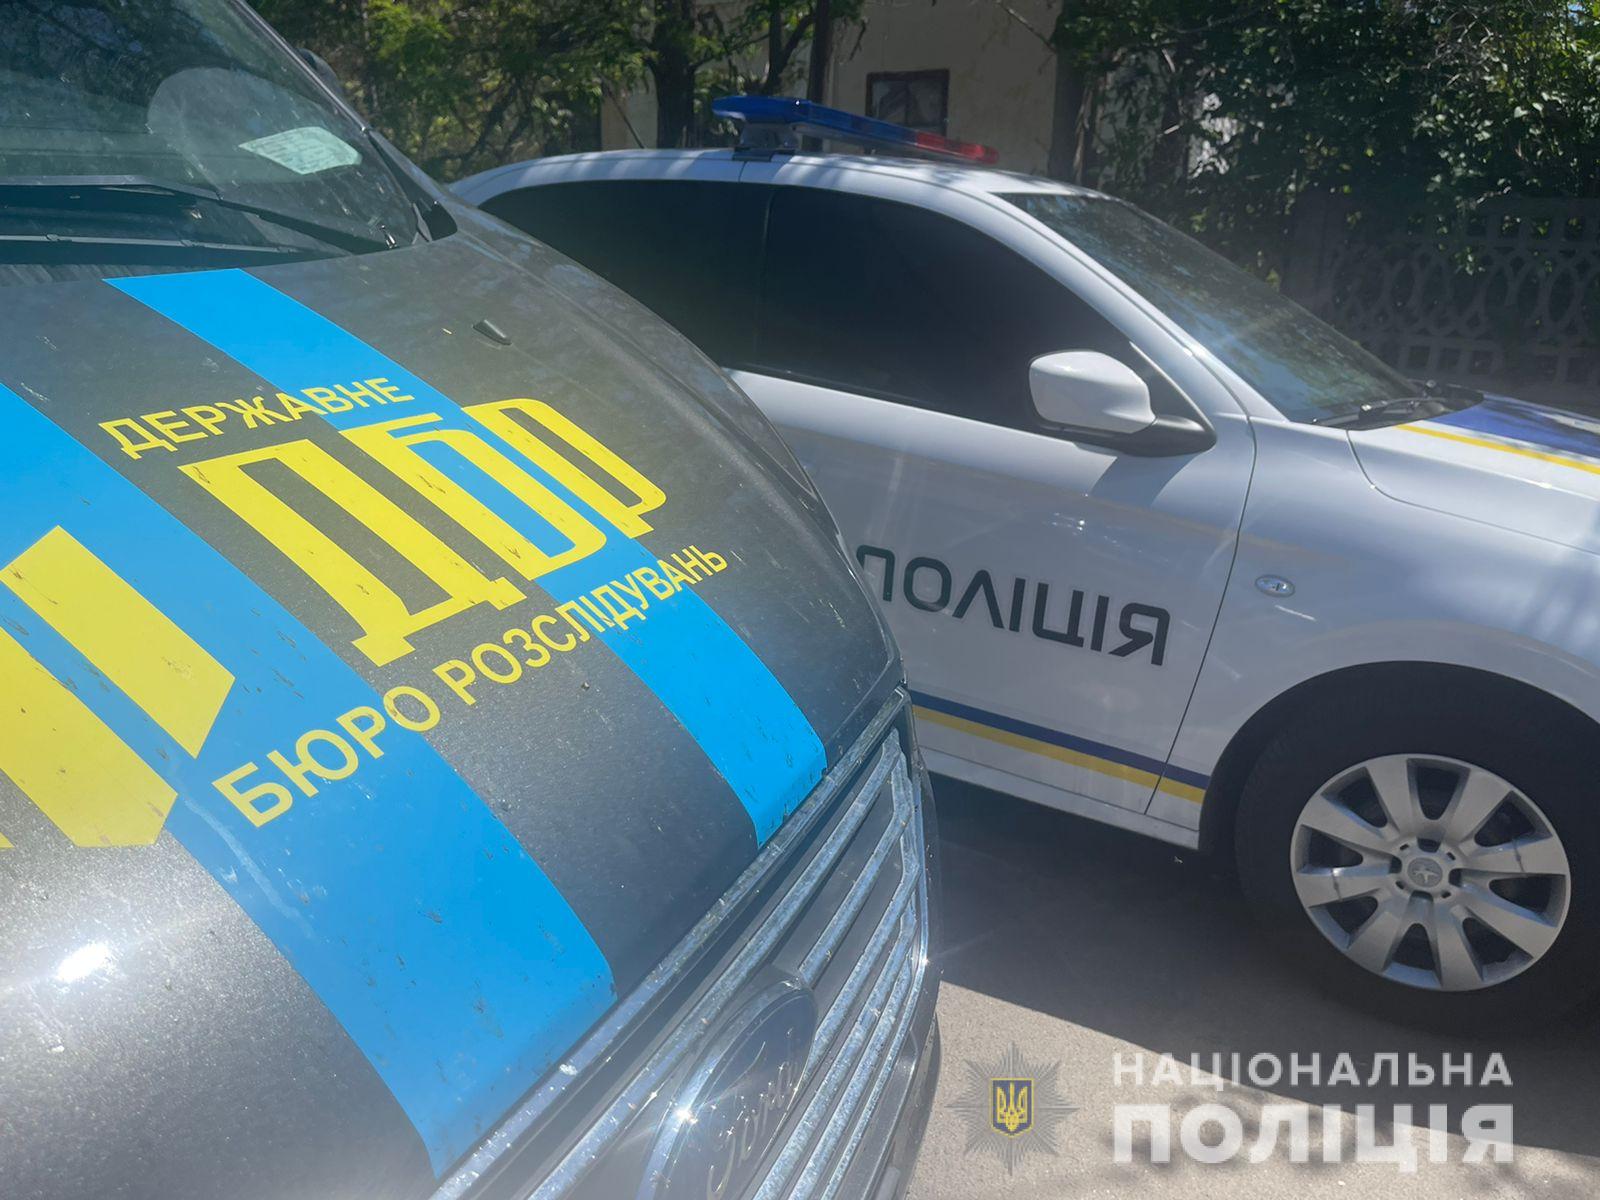 В Одесской области пенсионер тяжело ранил правоохранителя выстрелом из ружья. В ходе задержания погибла супруга стрелка